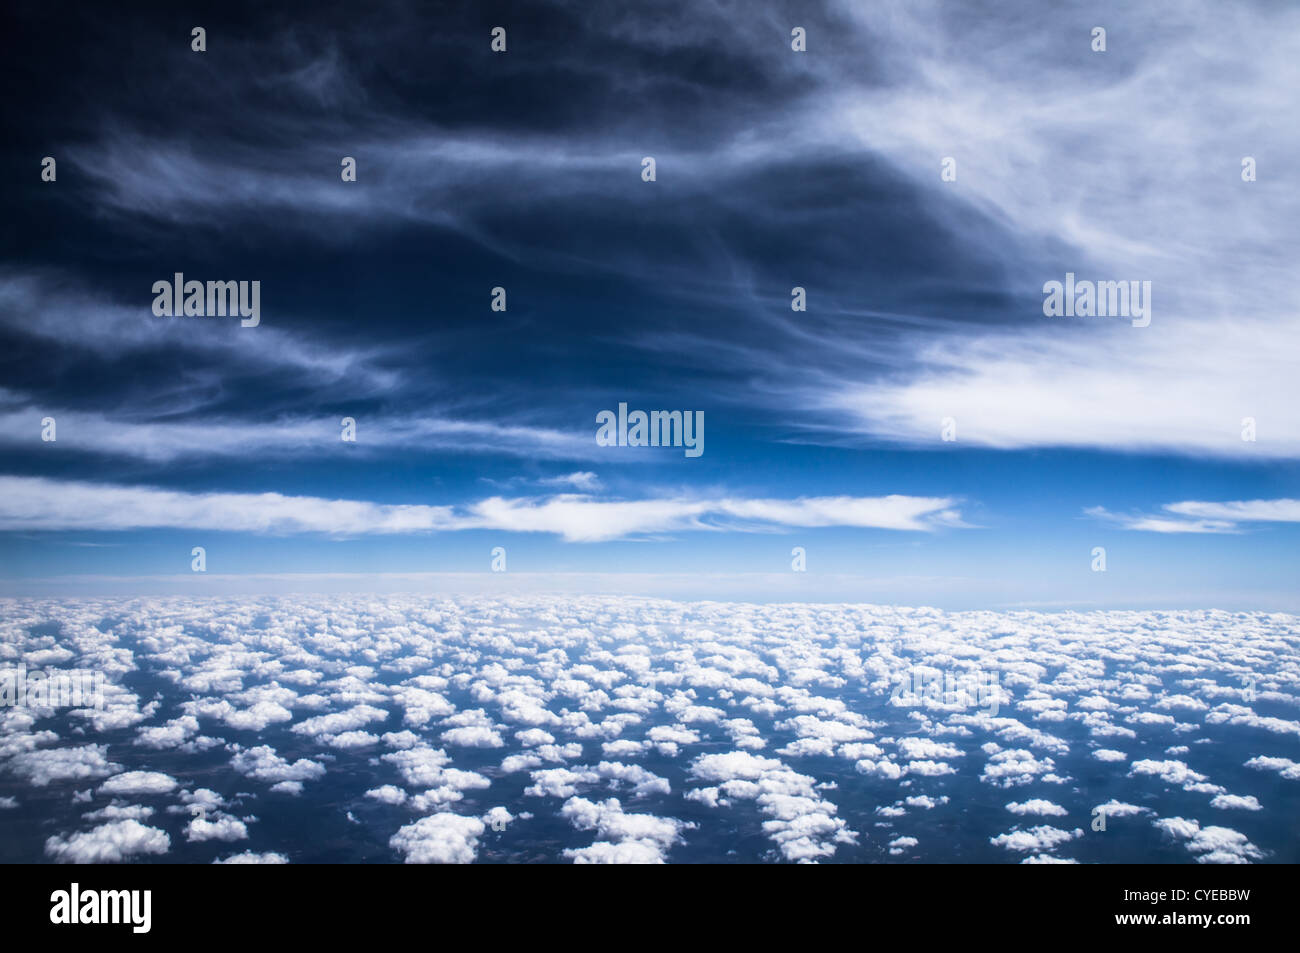 Altocumulus-Wolken oder Schafe Wolken auf Japanisch, wurden in den Himmel auf dem Weg von Houston, Texas, nach Atlanta, Georgia, am 25. Oktober 2012 gesehen. Stockfoto